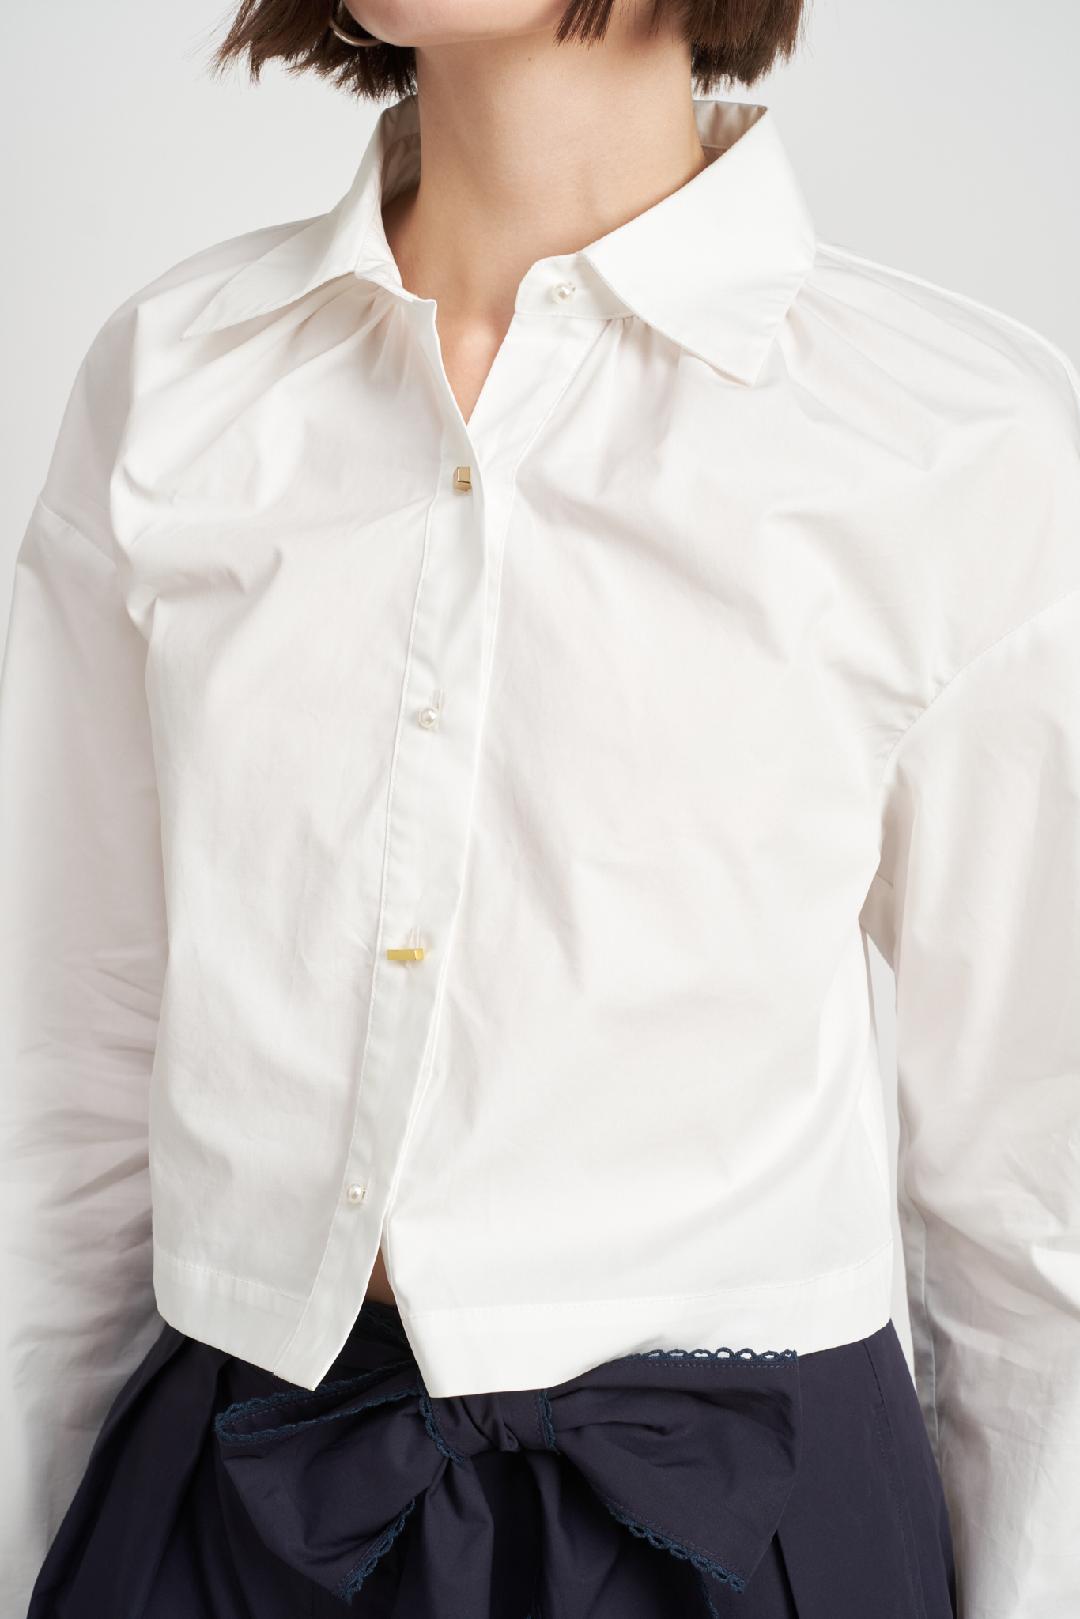 En Saison ‘Oversized Jewel Button Shirt’